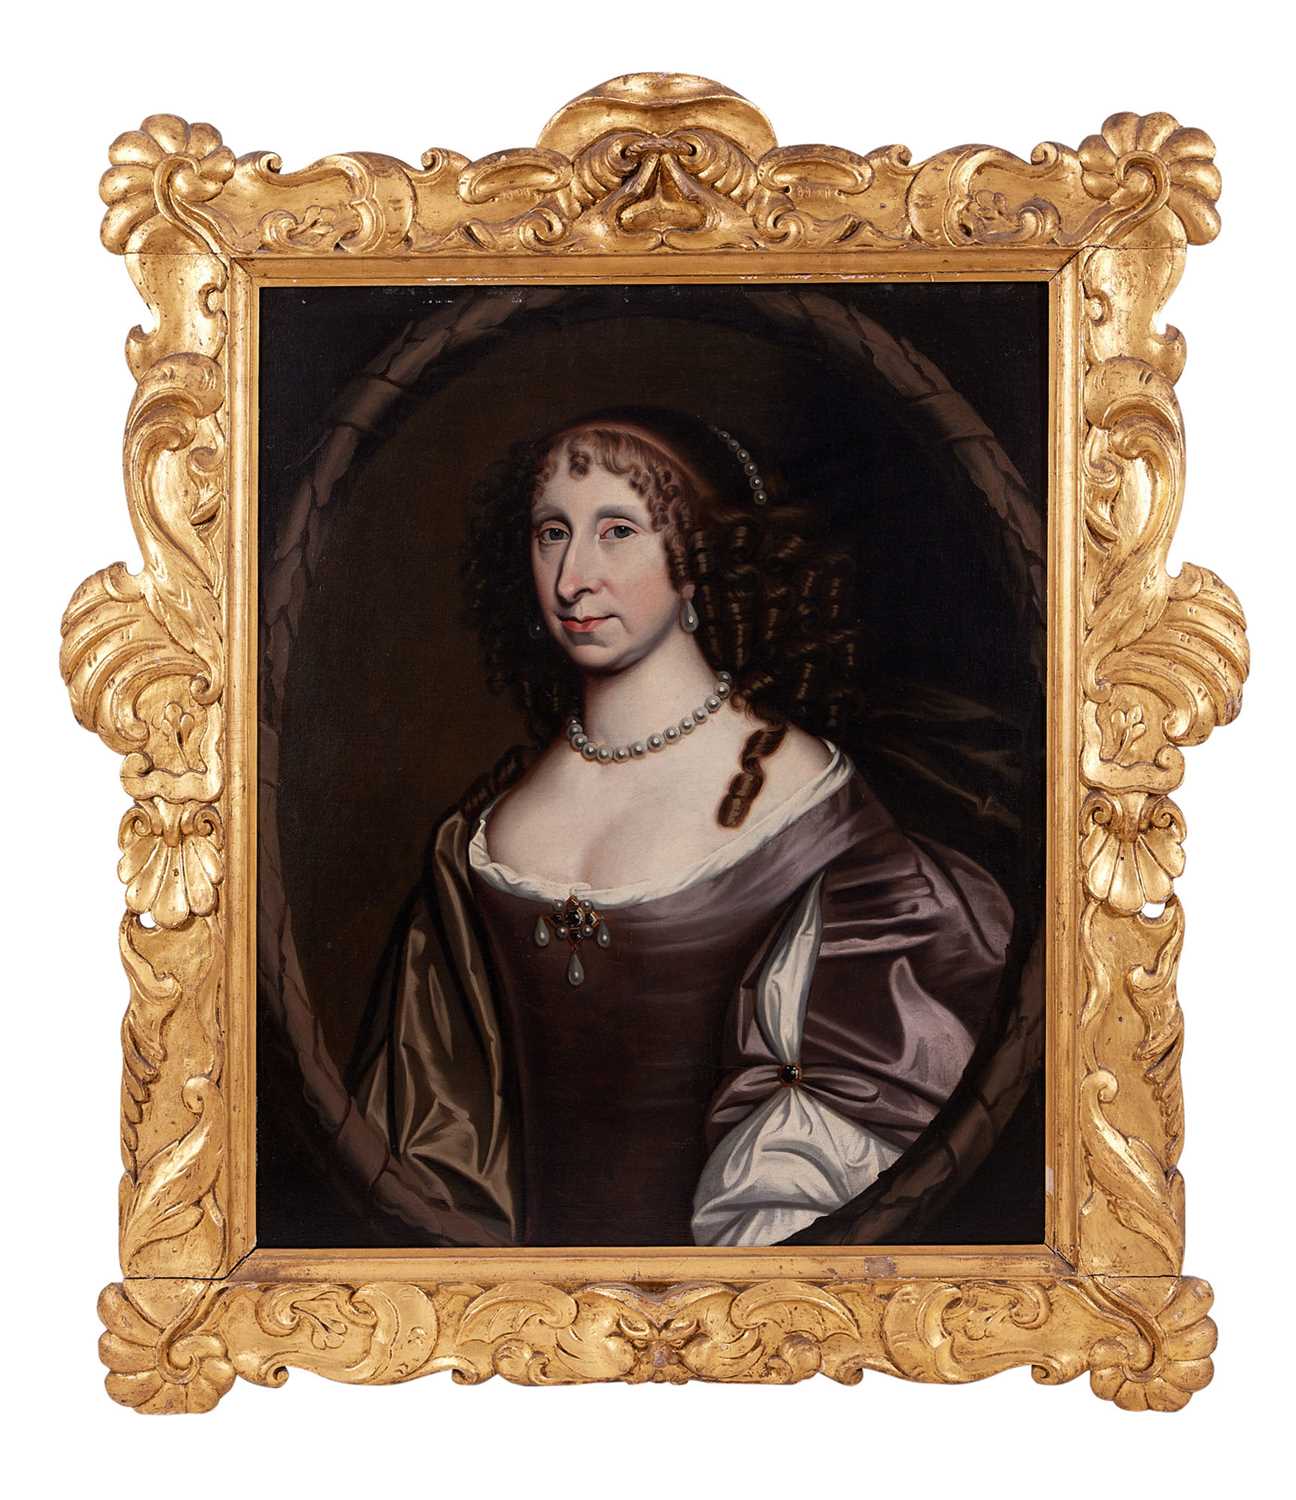 ATTR. TO DAVID SCOUGALL (SCOTTISH, FL. 1654-1682): A 17TH CENTURY PORTRAIT OF DAME HELEN SKENE